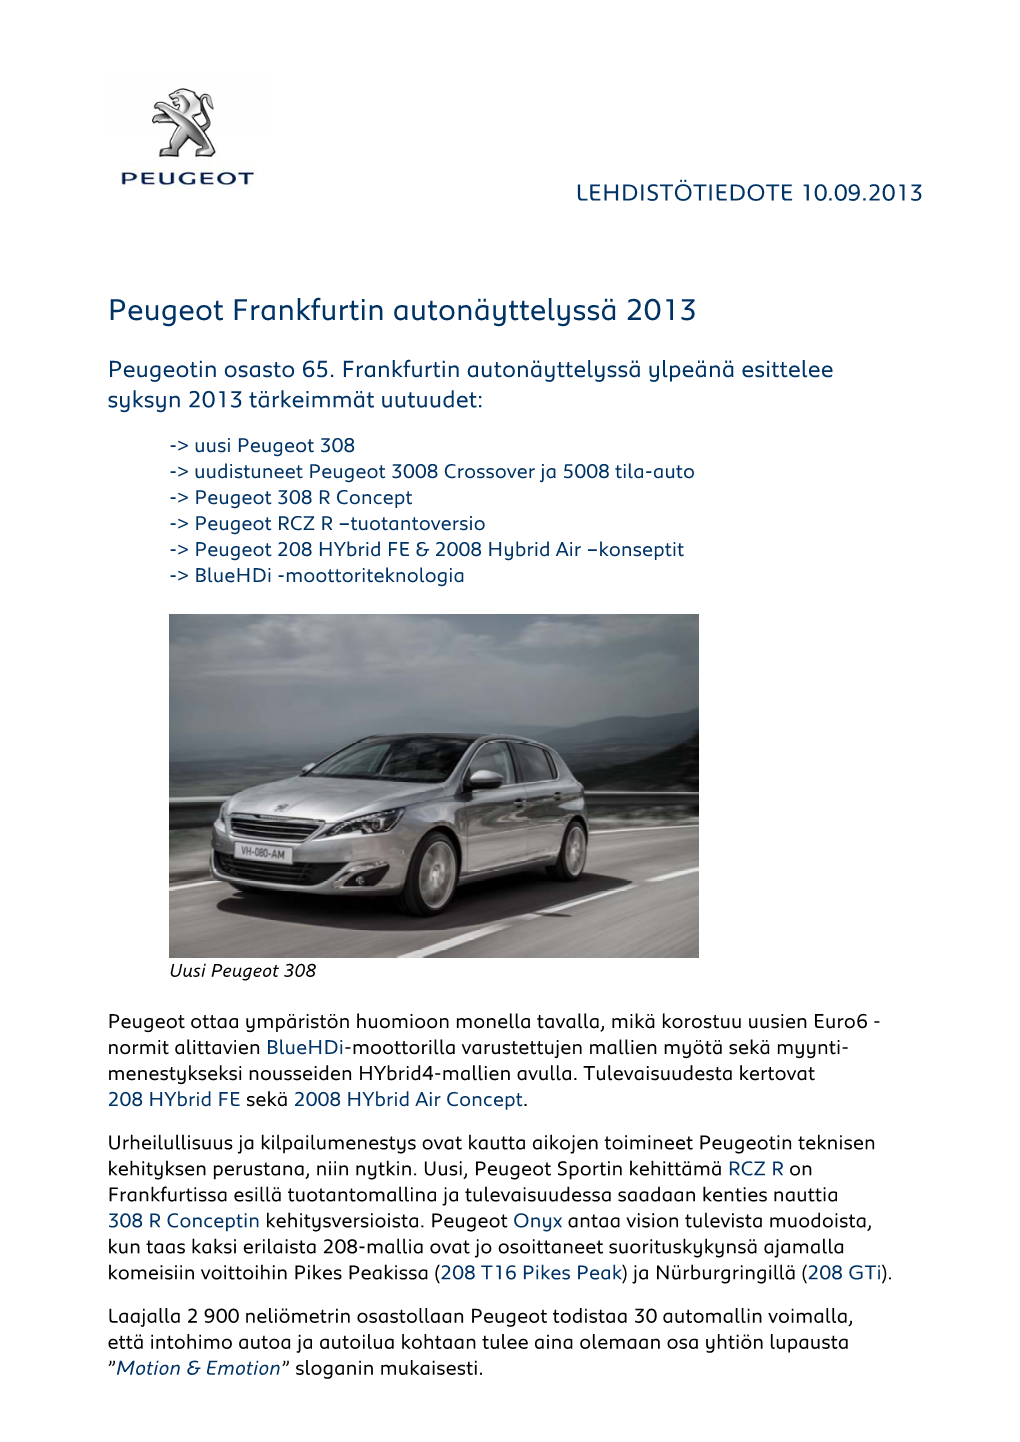 Peugeot Frankfurtin Autonäyttelyssä 2013